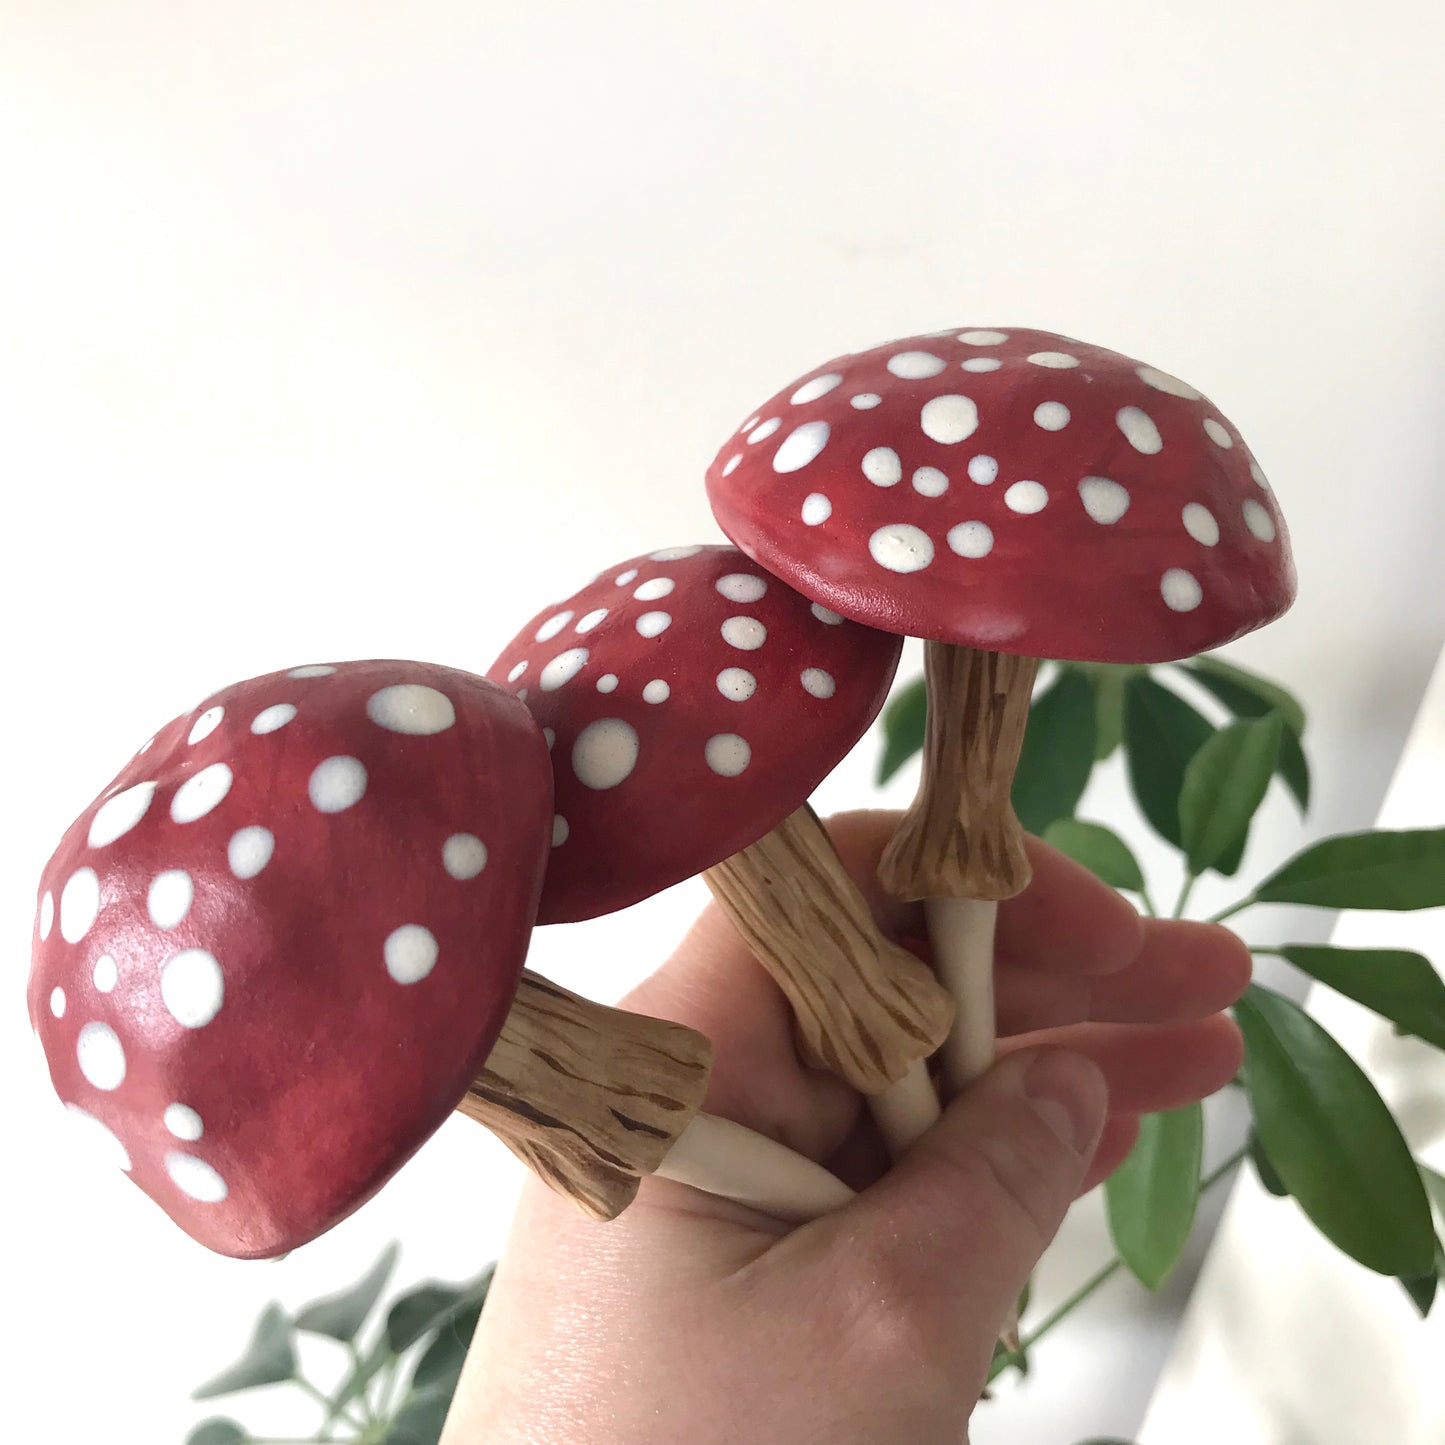 Mushroom Plant Stakes